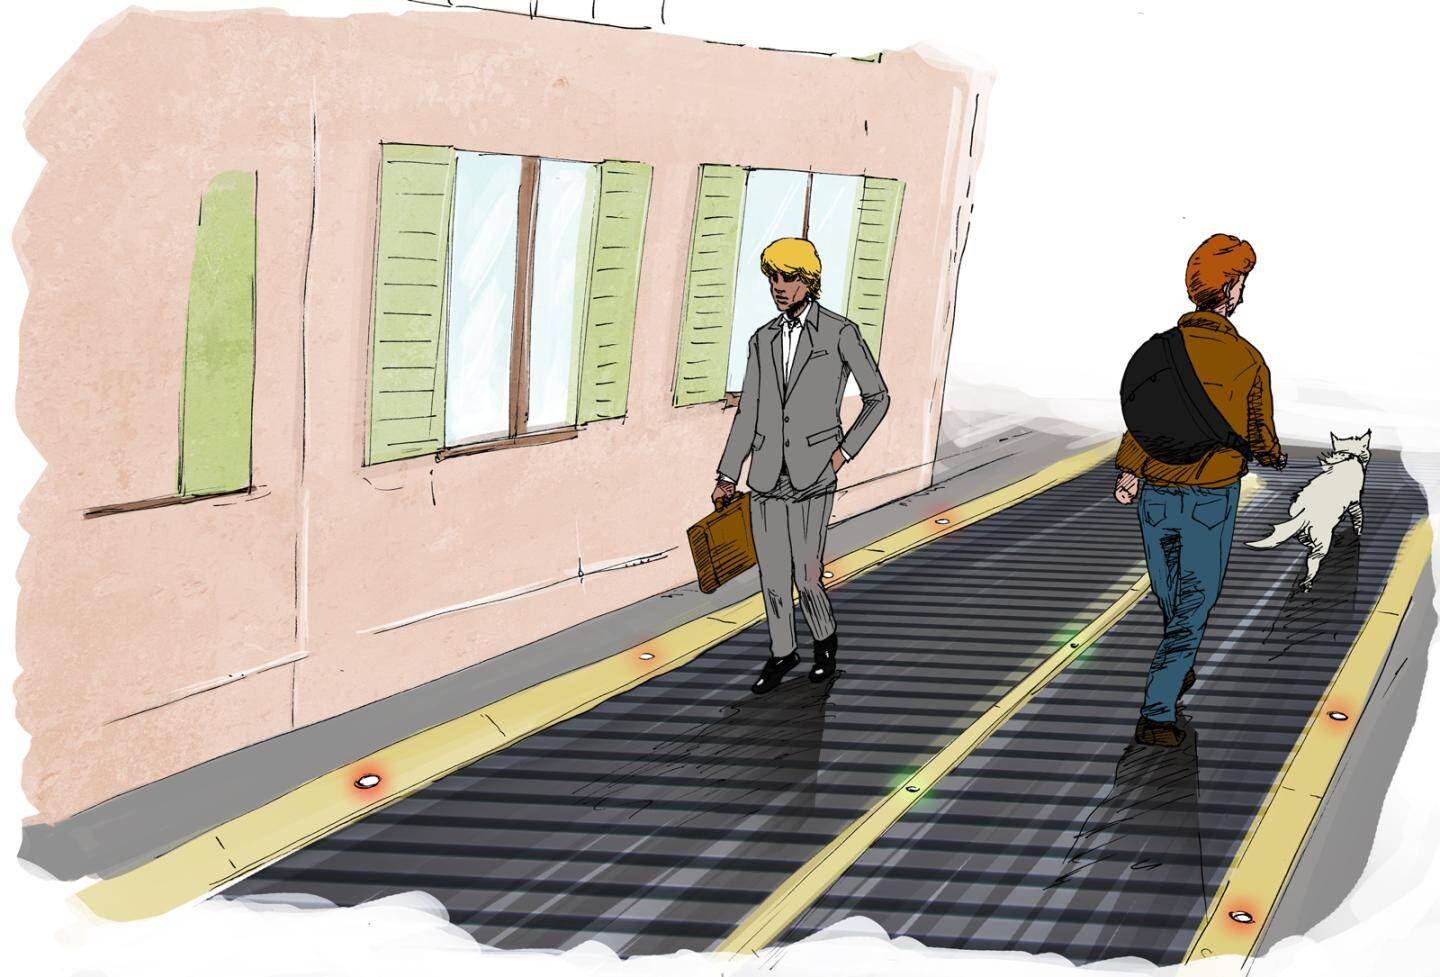 A Nice en 2044, les trottoirs seront-ils remplacés par des tapis roulants?